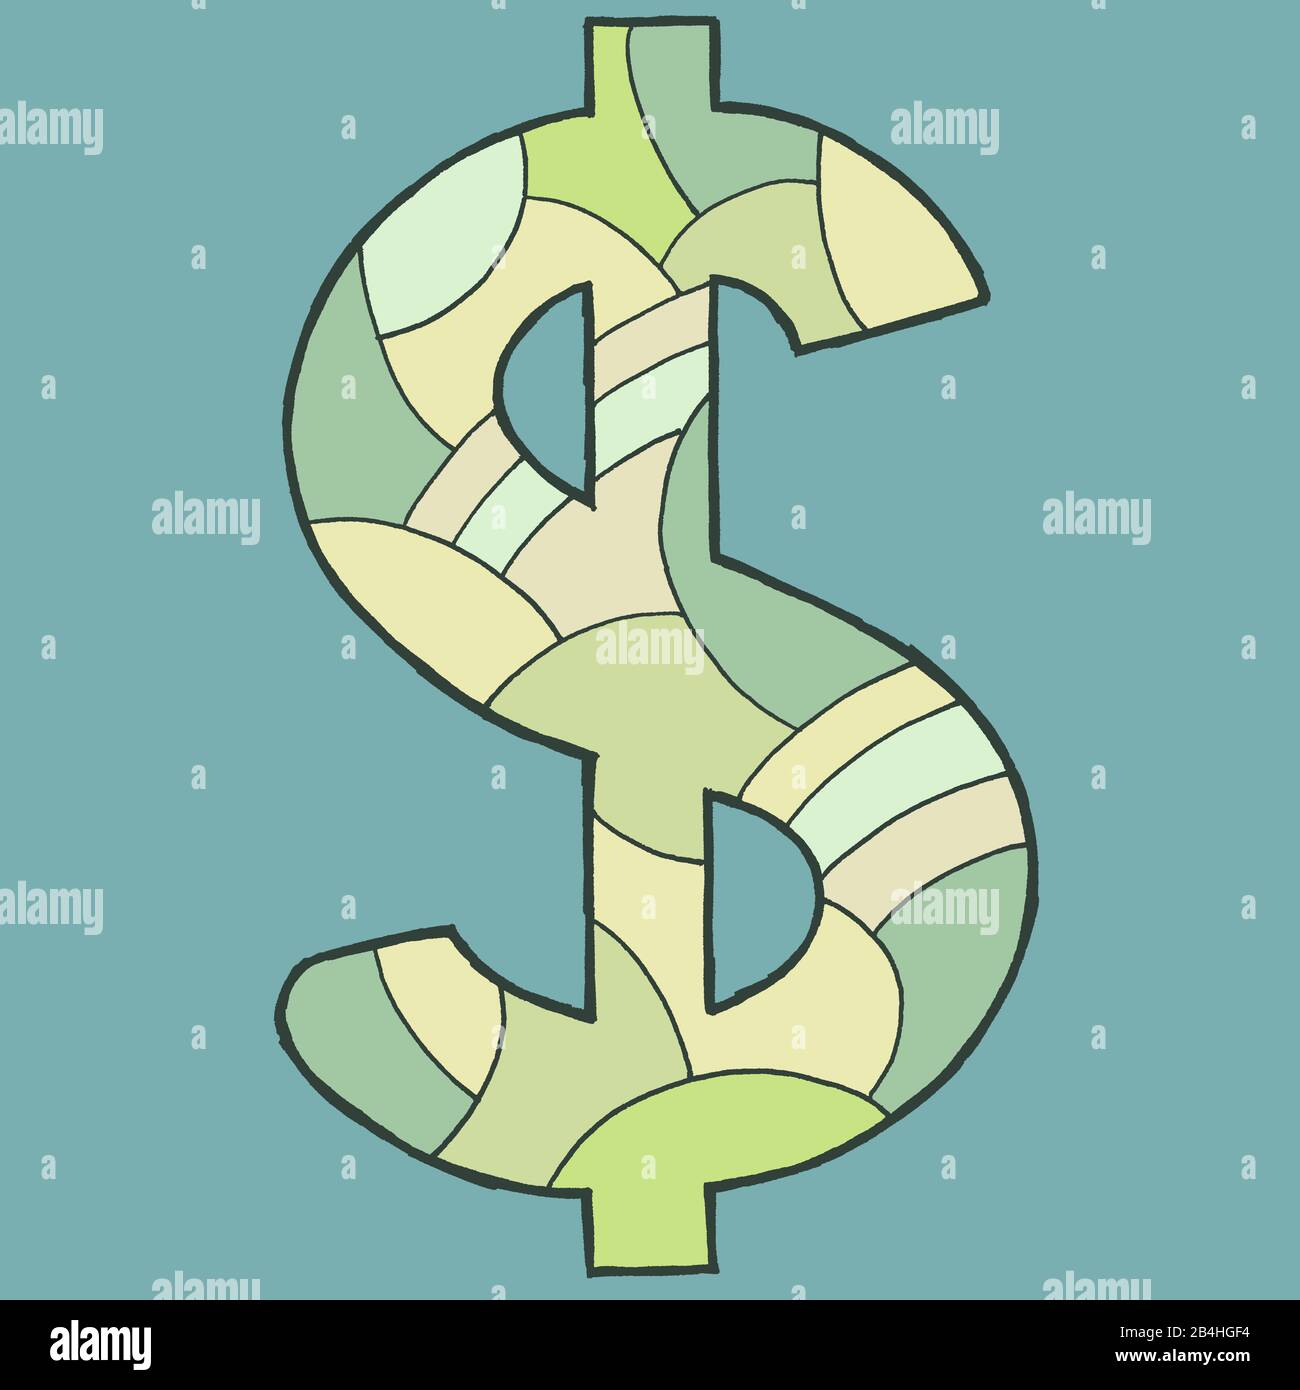 Dollarzeichen, gezeichnet als Vektorillotfication, in grünlichen Farbtönen auf bläulich-grauem Hintergrund in Pop-Art-Stilistik Foto de stock